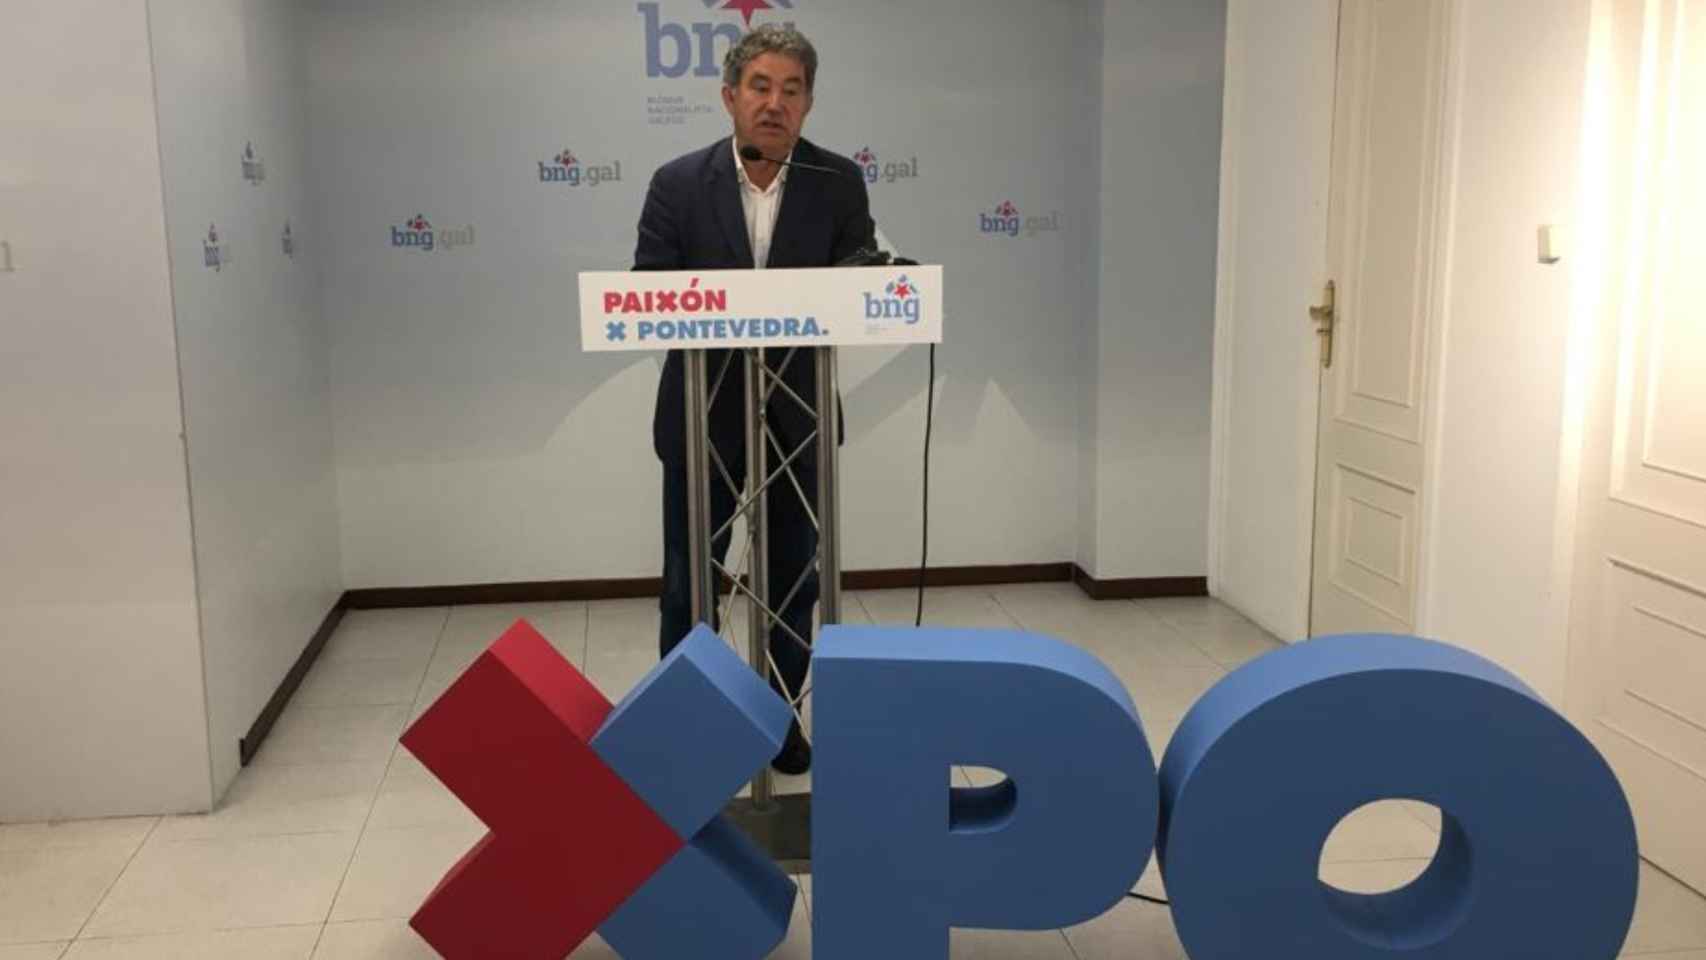 Miguel Anxo Fernández Lores presenta su candidatura a las elecciones municipales en Pontevedra.